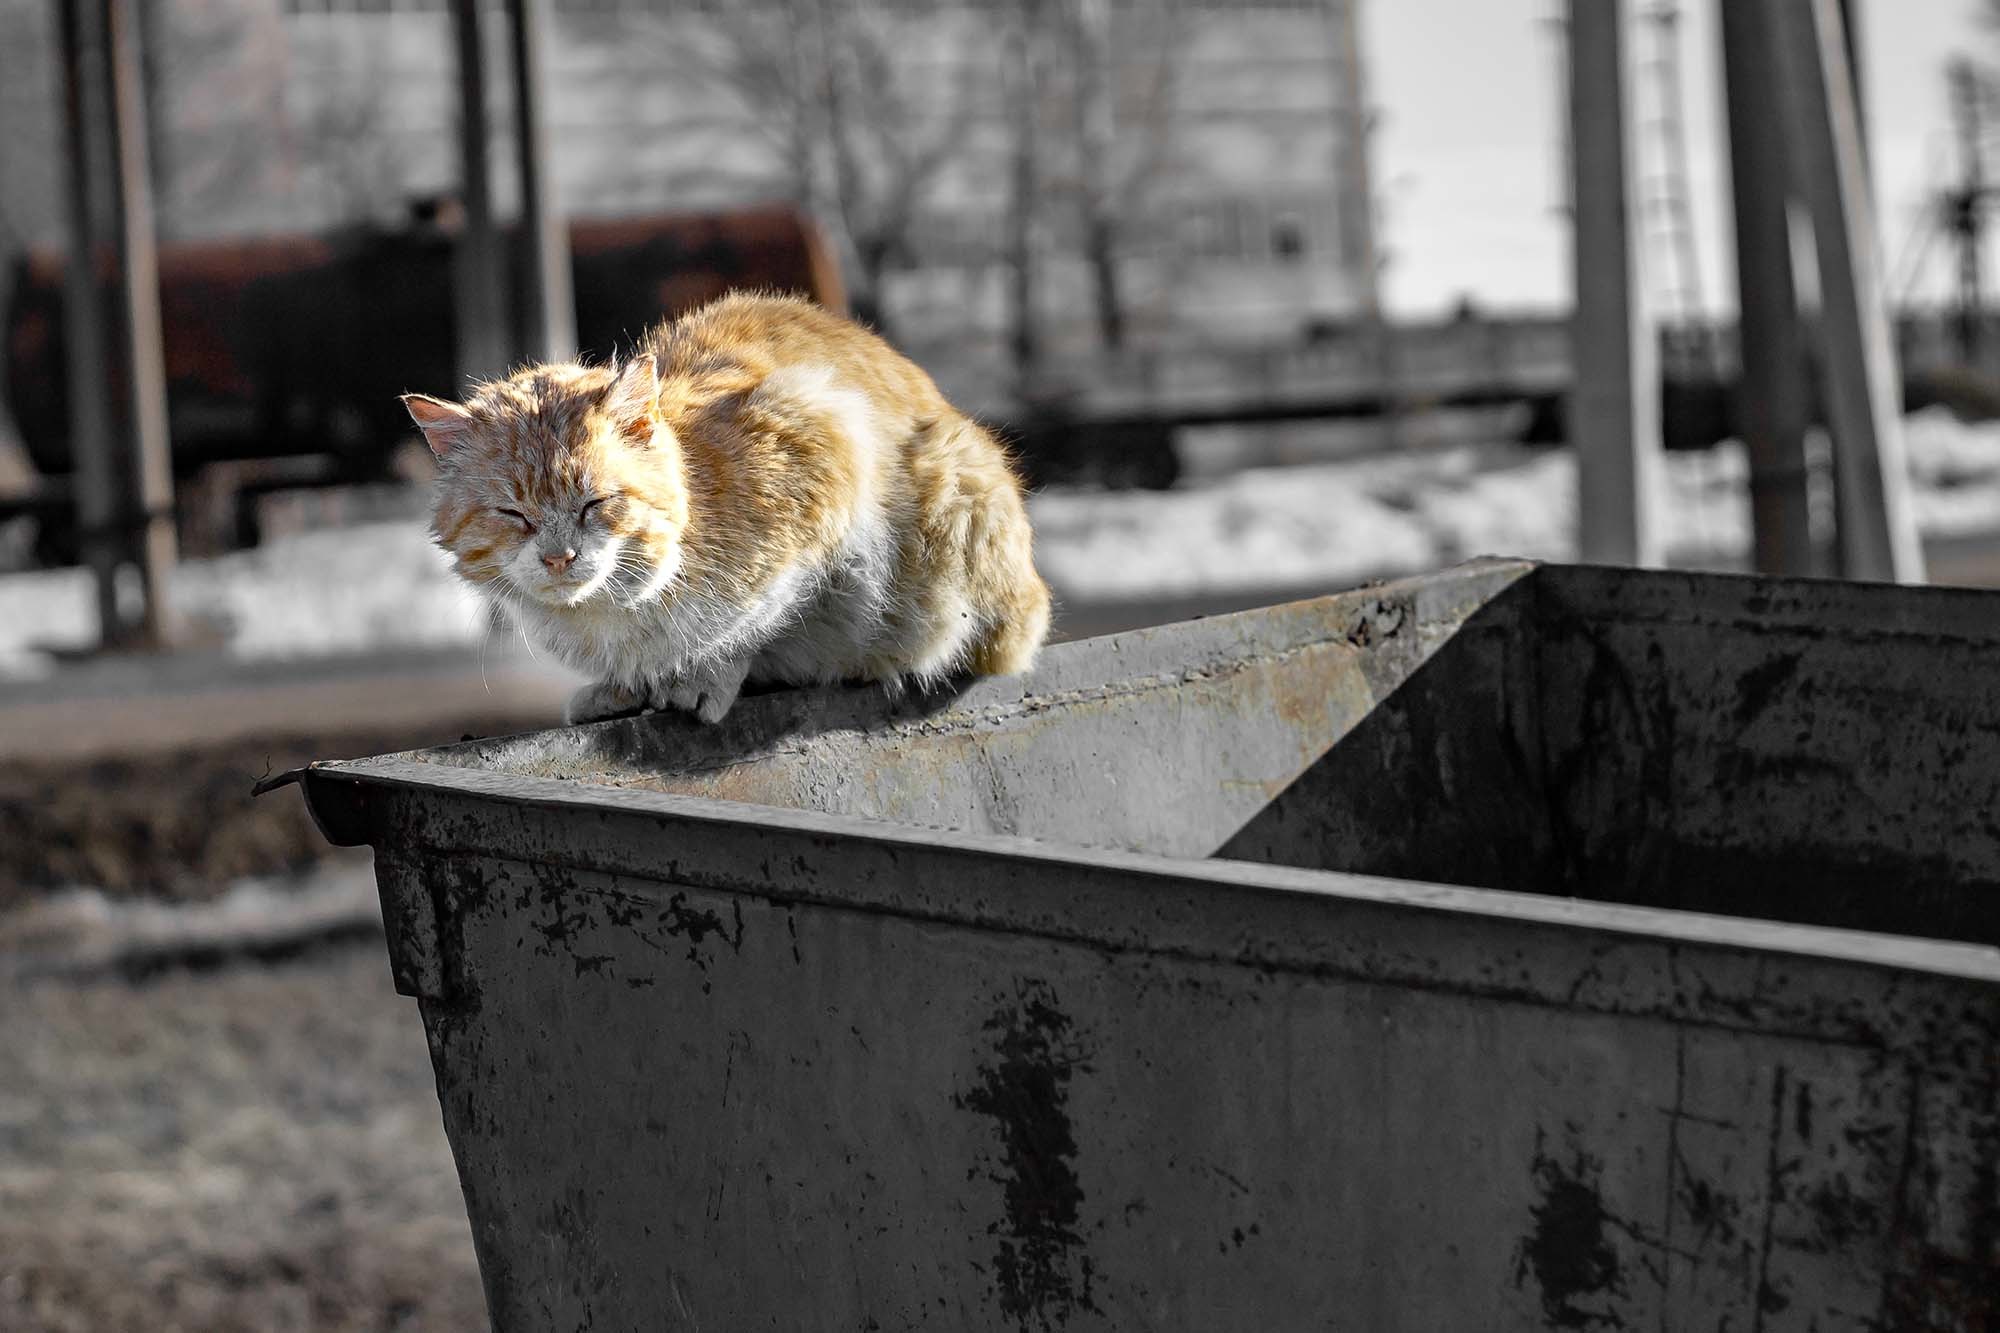 Hành trình kỳ lạ của chú mèo đi 'nửa vòng Trái Đất' từ Thổ Nhĩ Kỳ sang Mỹ